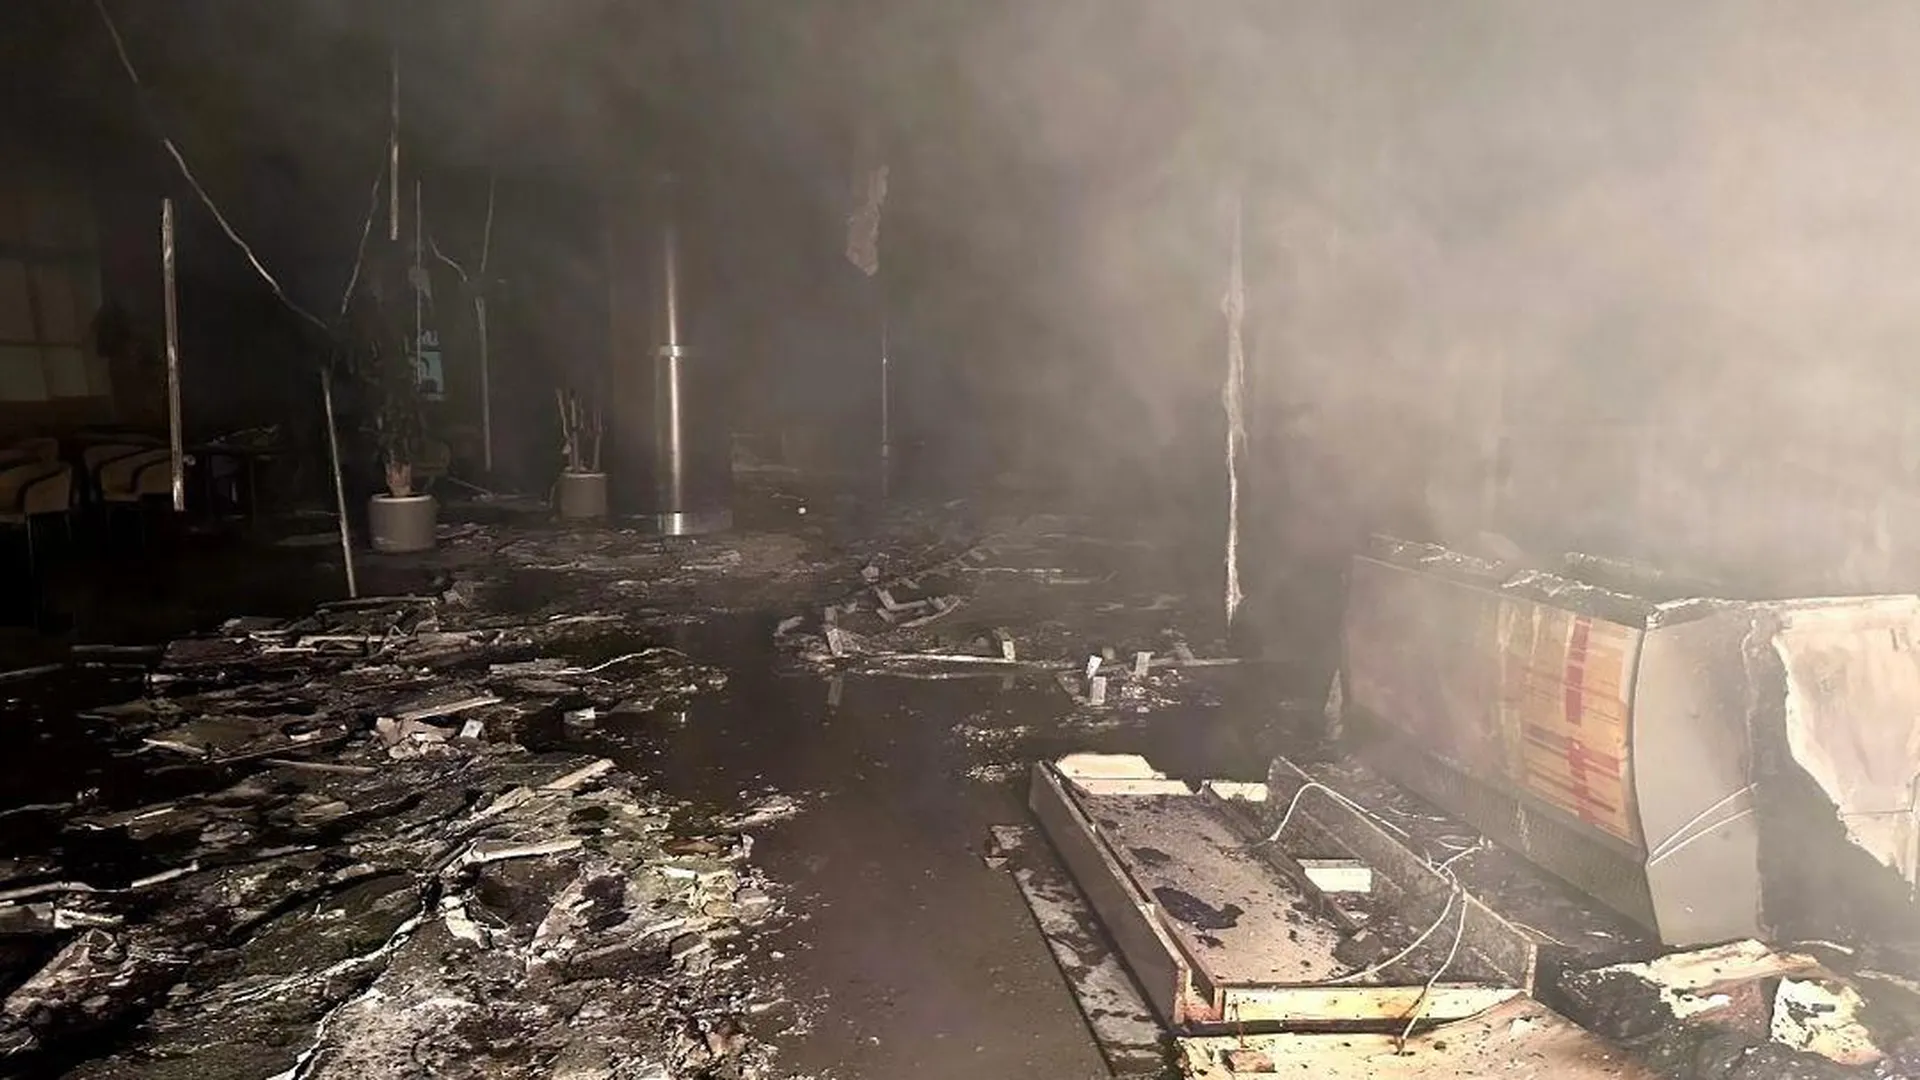 Ни одного живого места: появились фото того, что осталось от «Крокус сити холла» после теракта и пожара